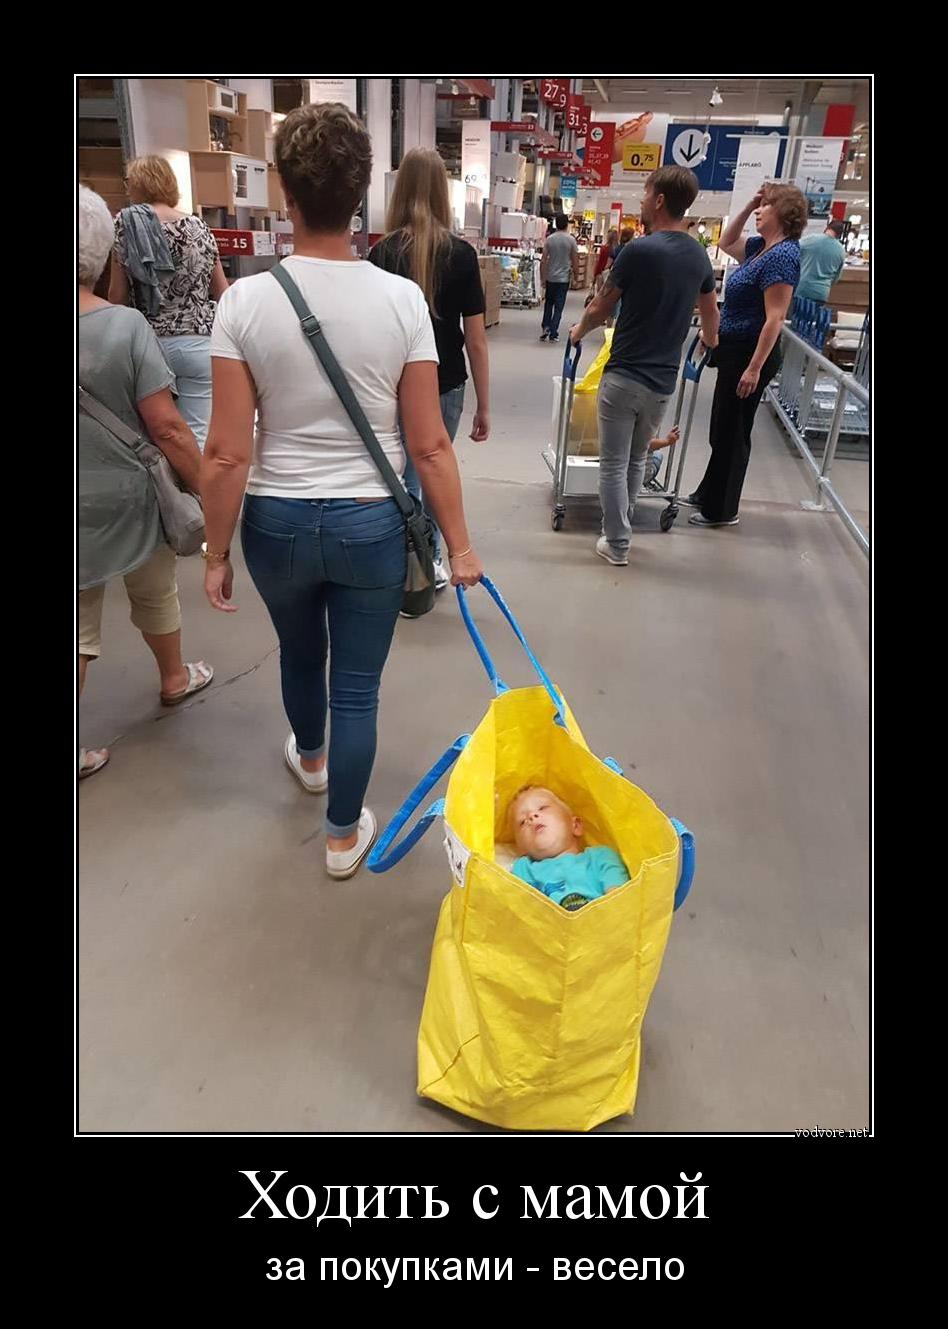 Демотиватор: Ходить с мамой за покупками - весело